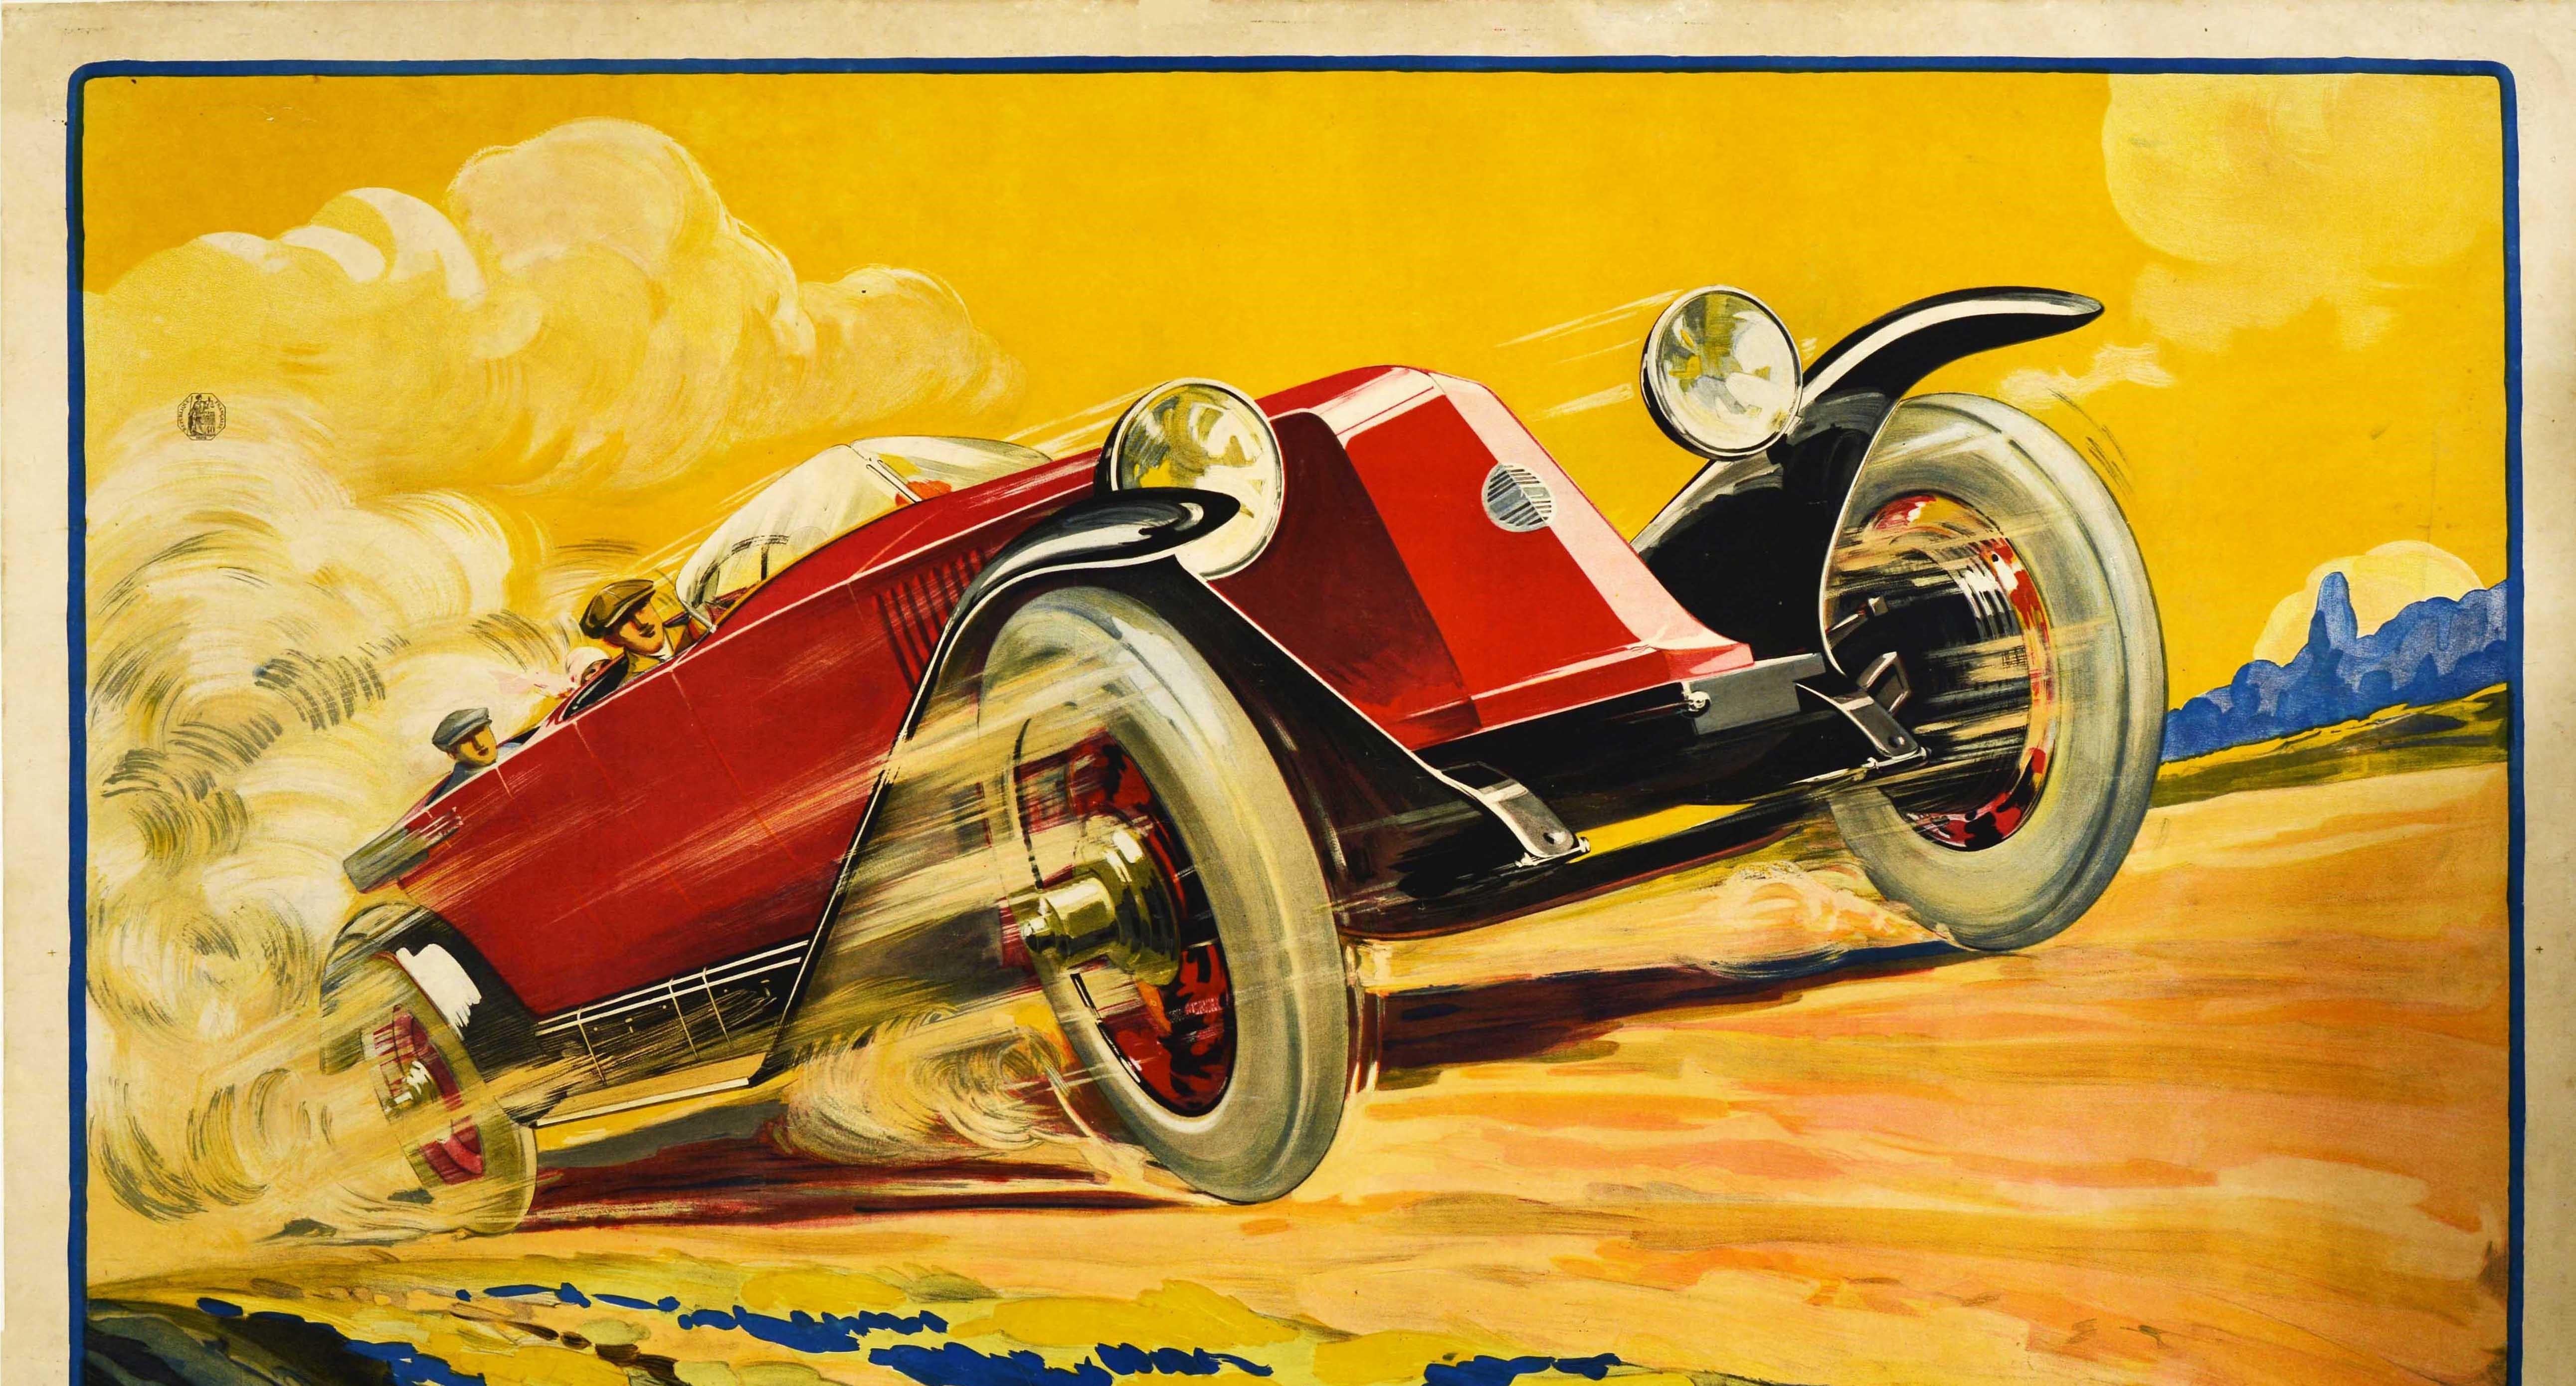 Affiche publicitaire ancienne pour le constructeur automobile français Renault (fondé en 1899), présentant un superbe dessin Art Déco montrant un cabriolet Type 45 rouge classique roulant à vive allure sur une route de campagne, avec le nom de